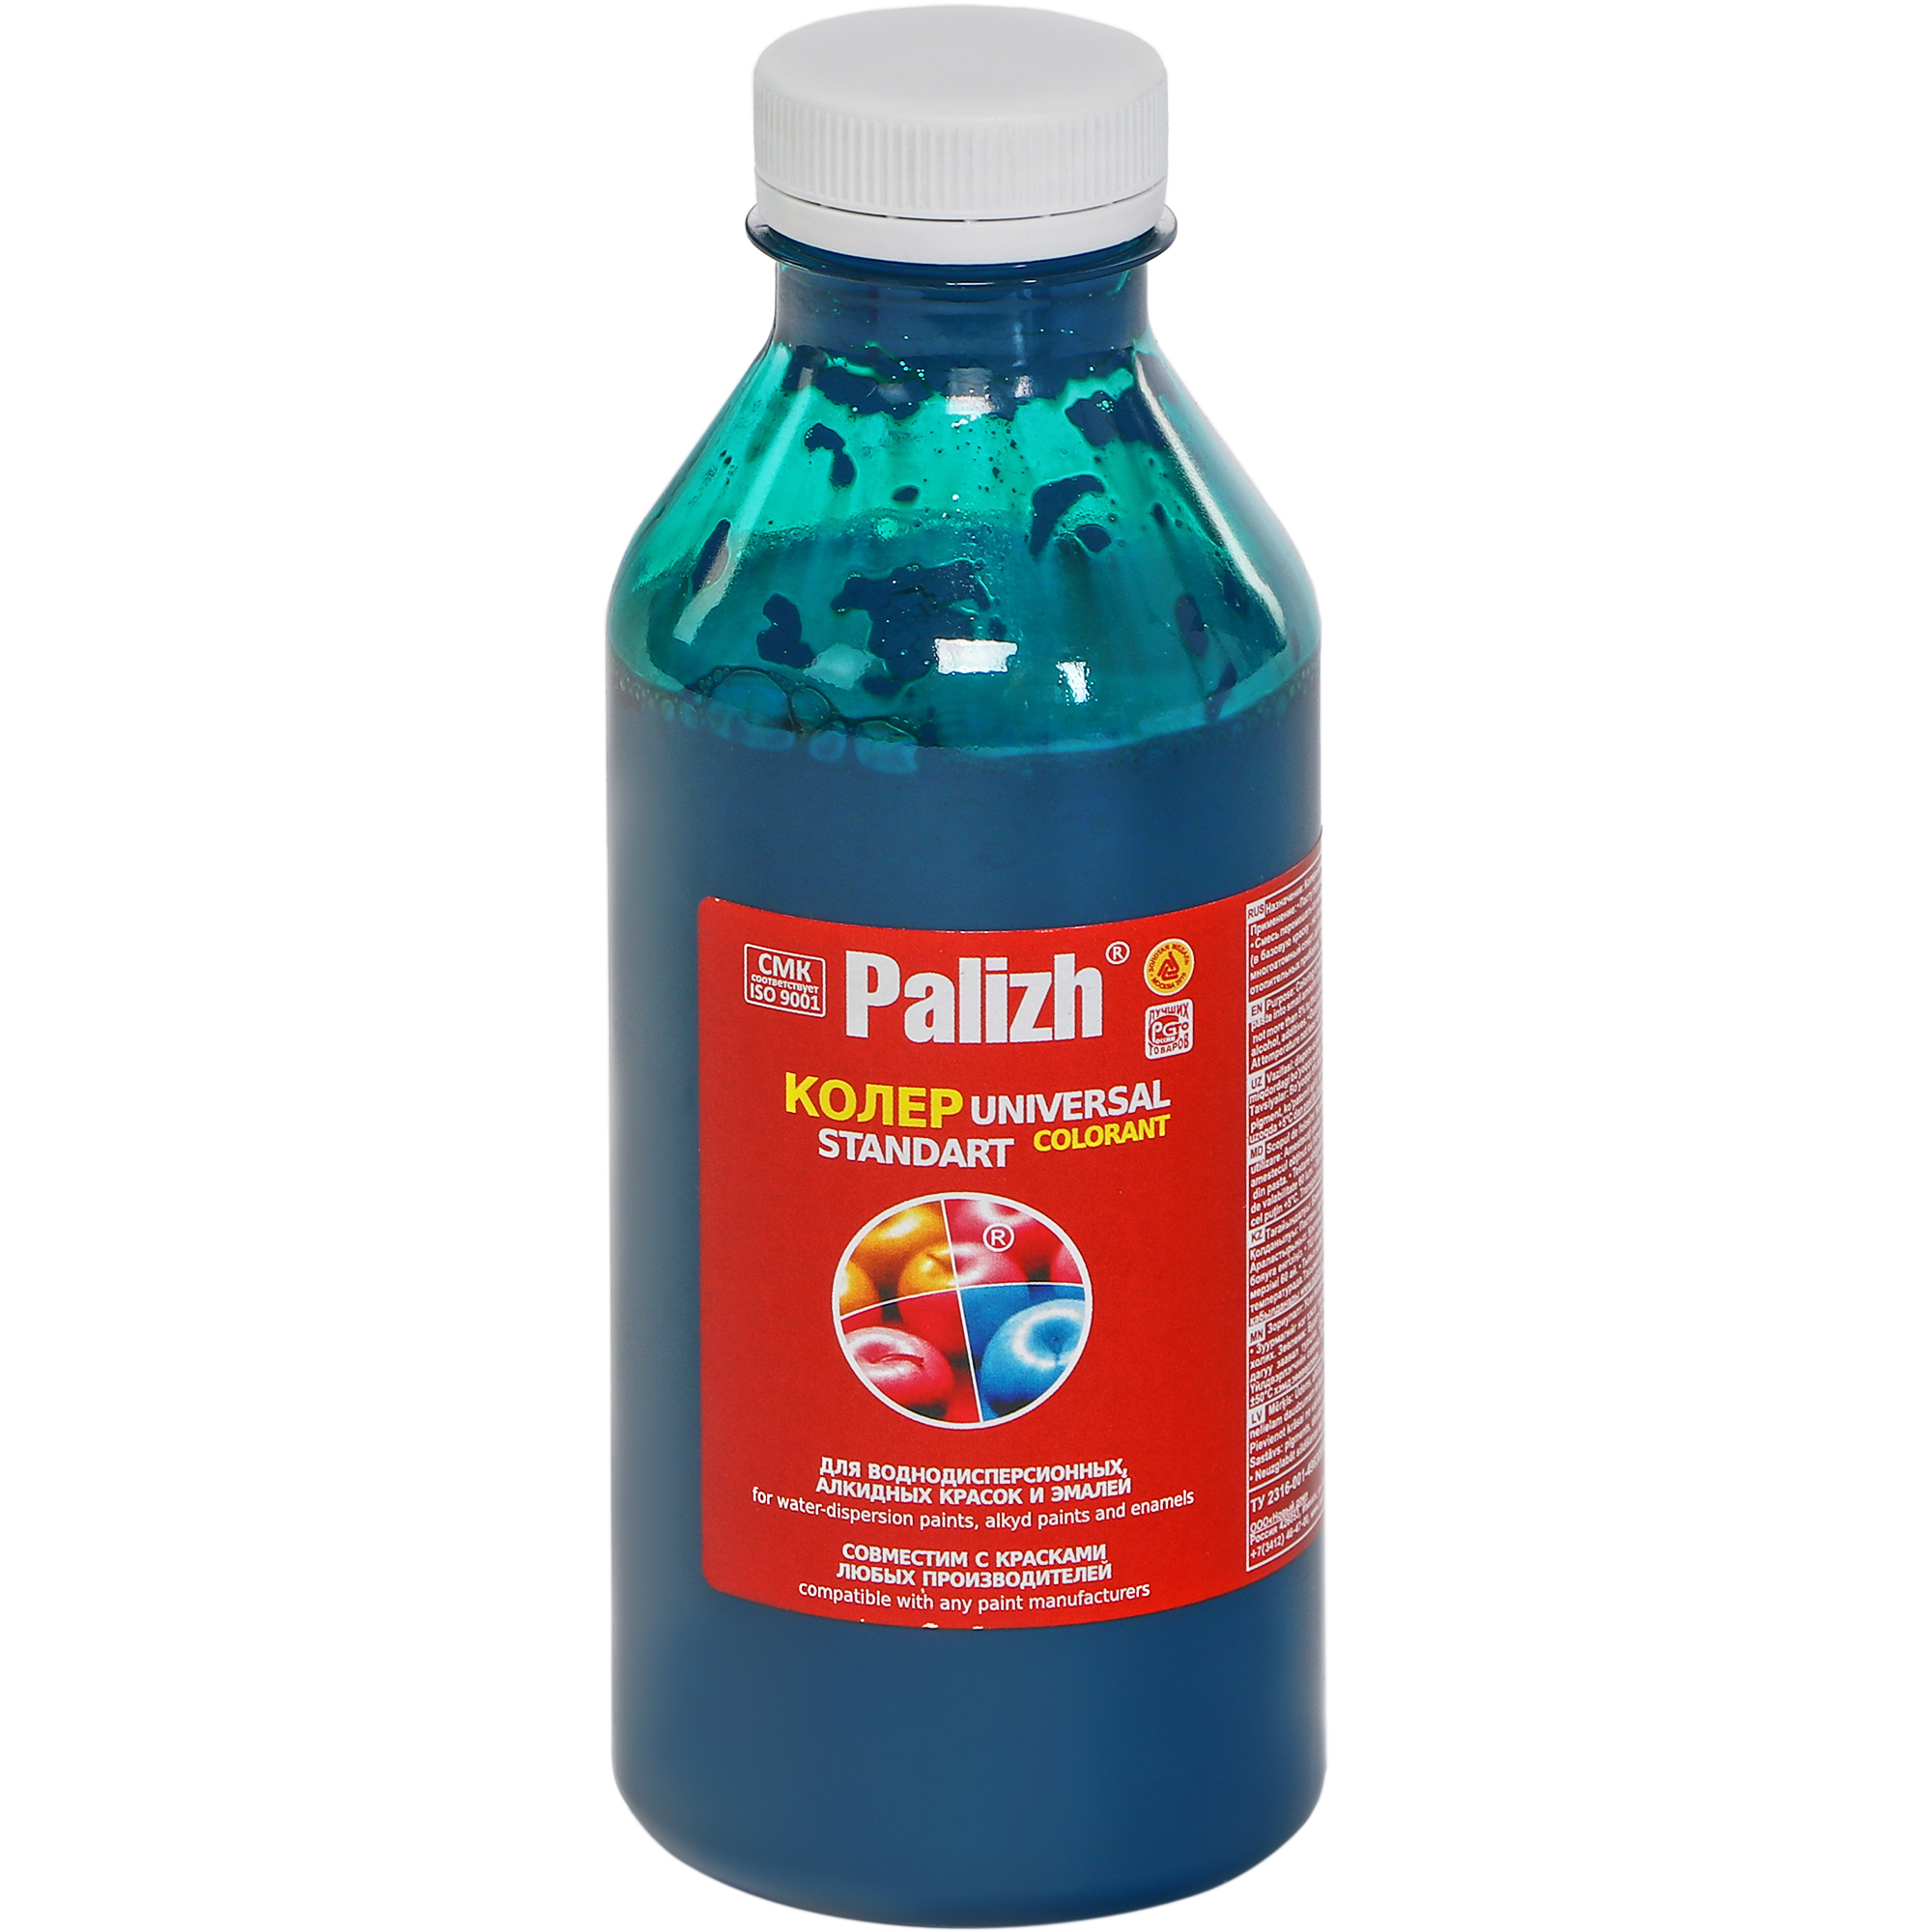 Паста универсальная колеровочная Palizh бирюза, 450 мл паста универсальная колеровочная palizh голубой 100 мл